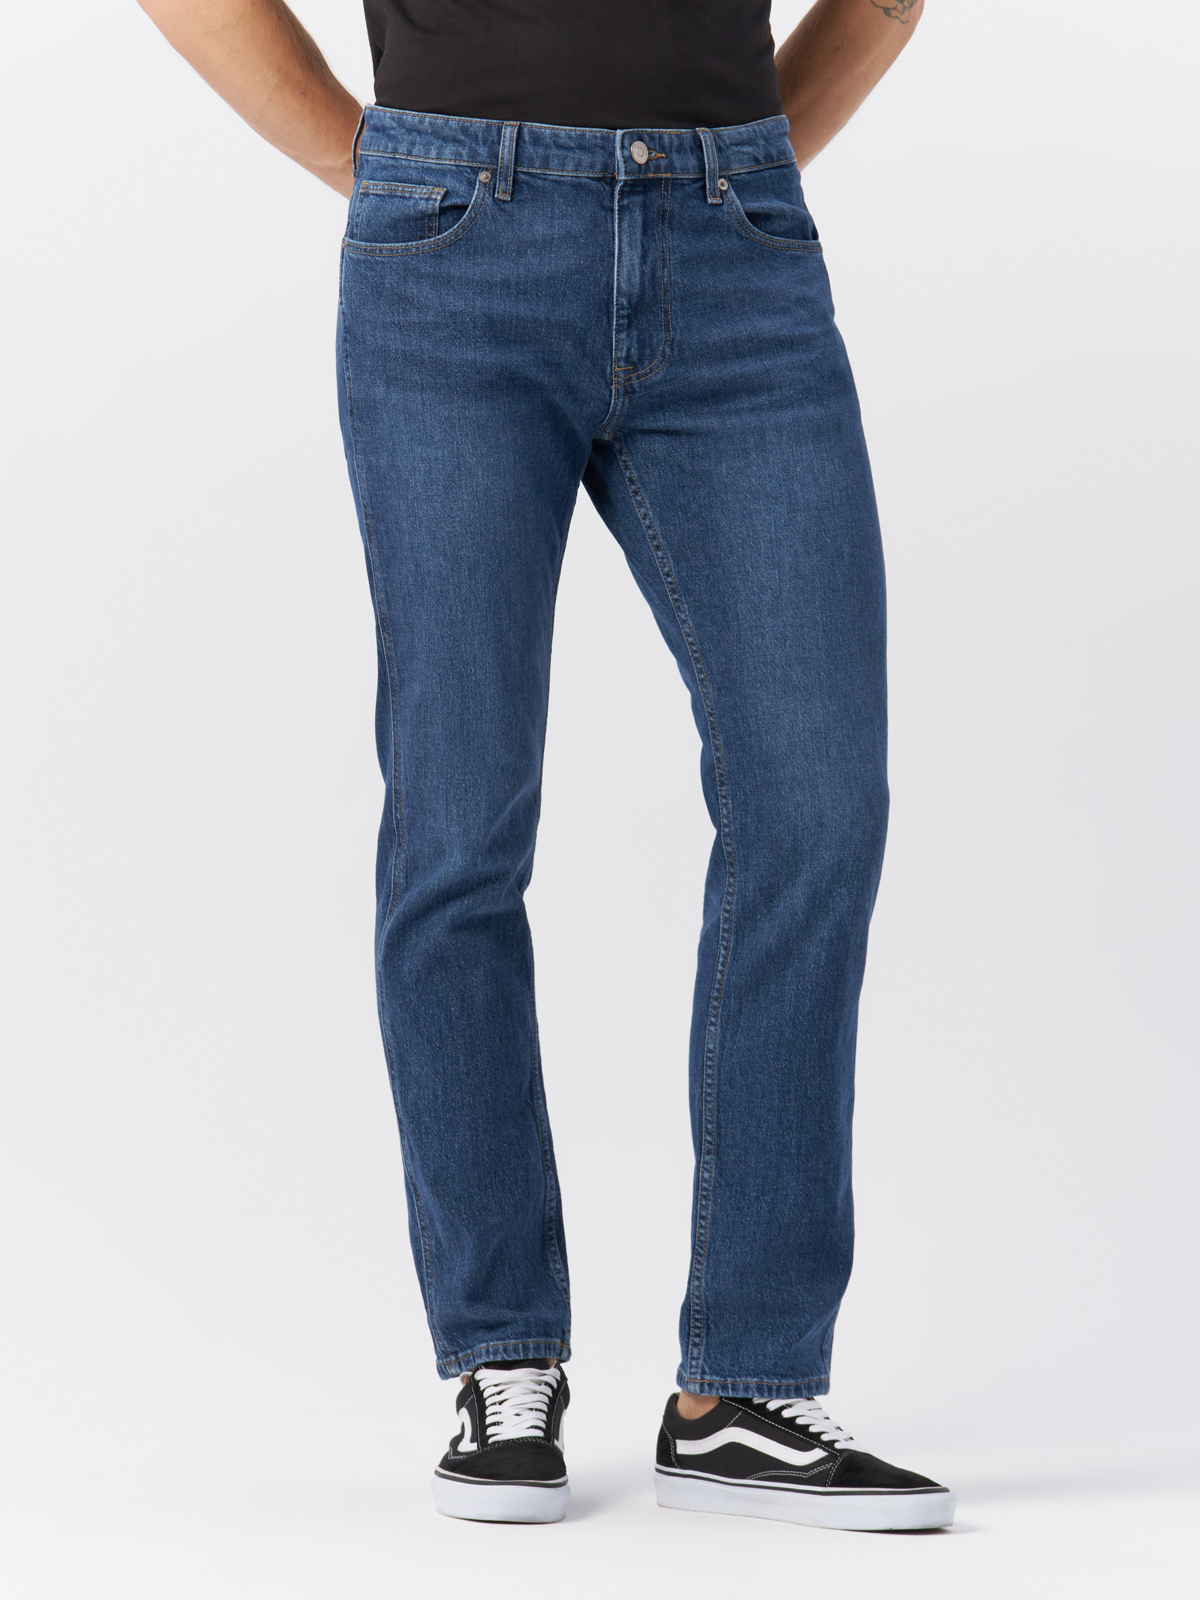 Джинсы Cross Jeans для мужчин, C 132-071, размер 31-32, синие